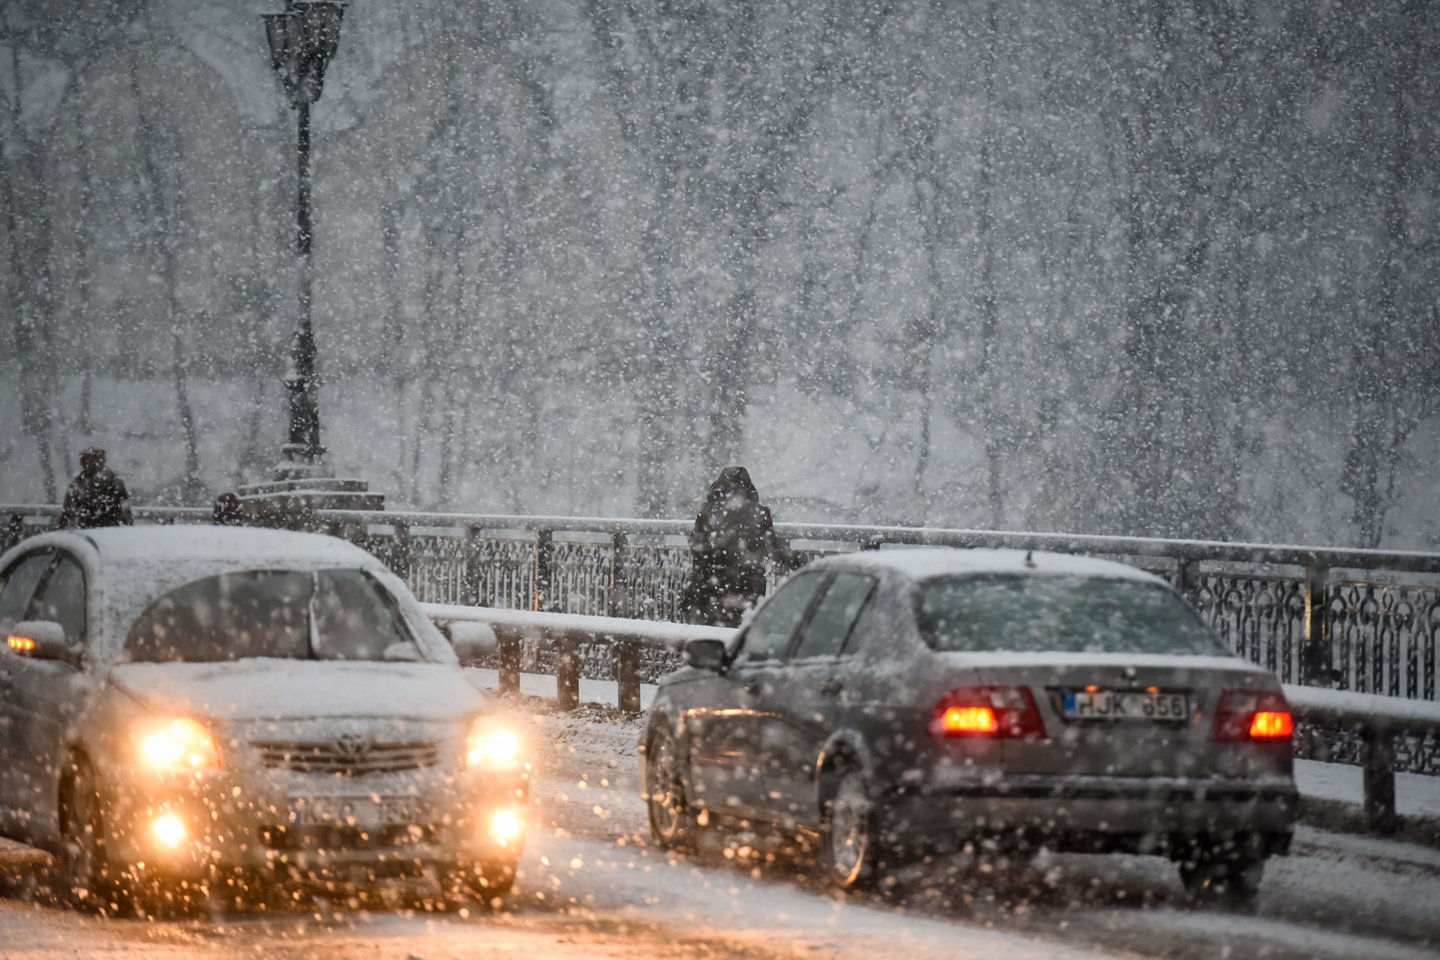 žiemą, sniegas, orai, pūga, sninga, mašina, automobilis, plikledis, provėžos, šlapdriba, slidus kelias, sliduma<br>D.Umbraso nuotr.